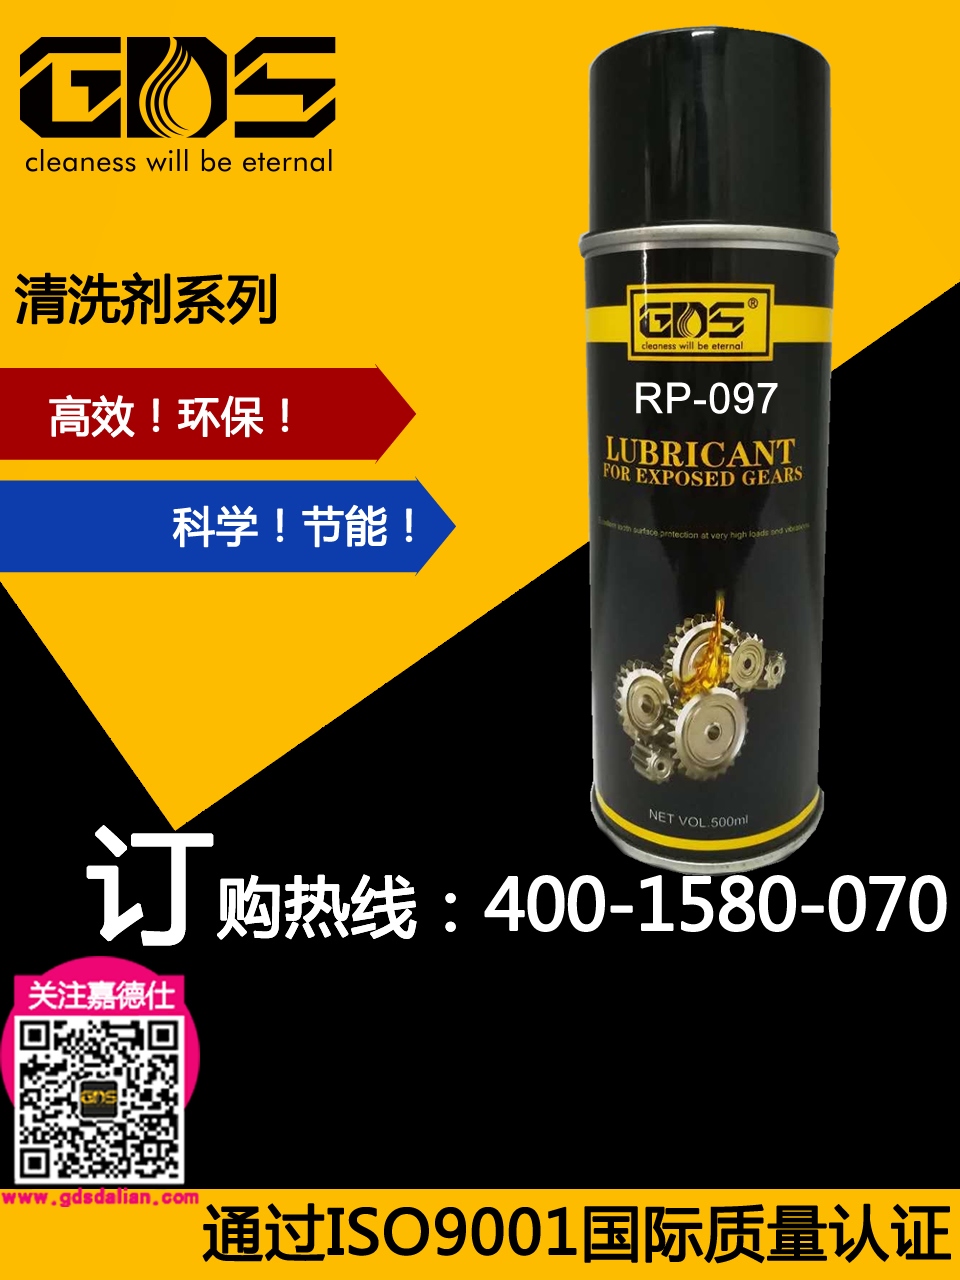 PR-097 机车橡胶润滑保护剂